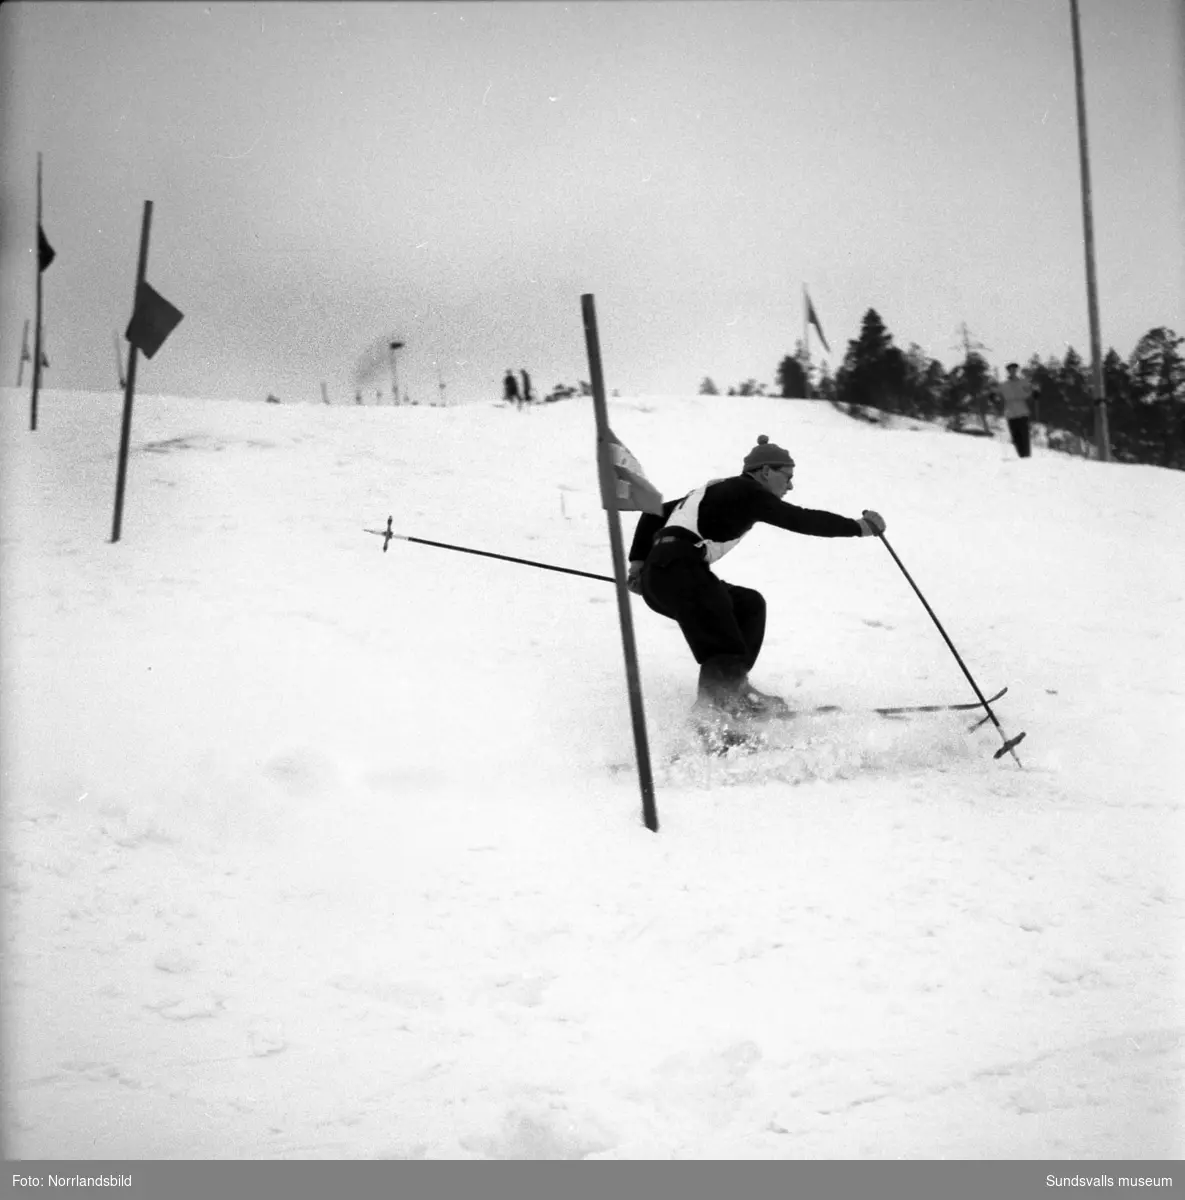 Slalomtävling i Sundsvall, bilder på hemmaåkarna. På första bilden ses Sten Pettersson, Kurt Backlund och Kjell Englund.